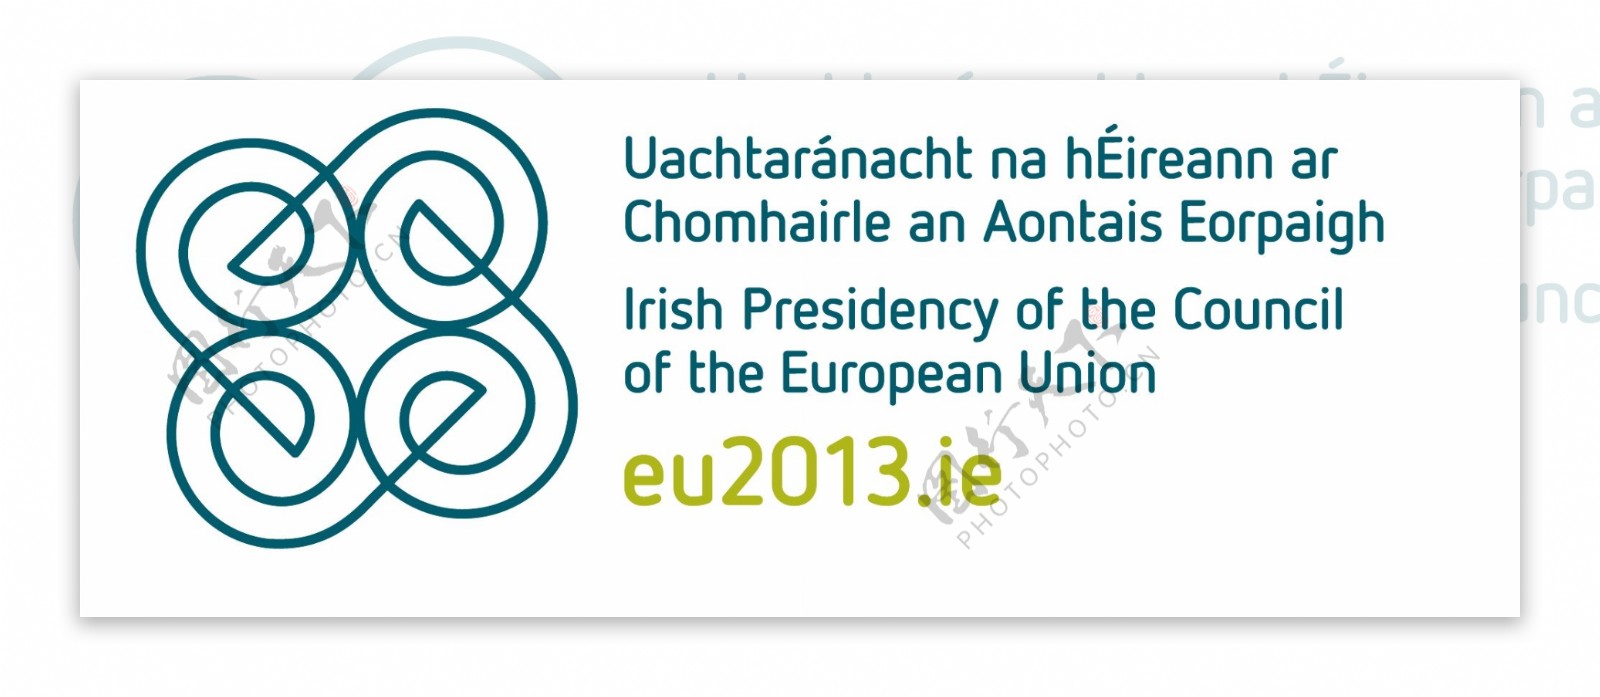 2013爱尔兰欧盟轮值国标志